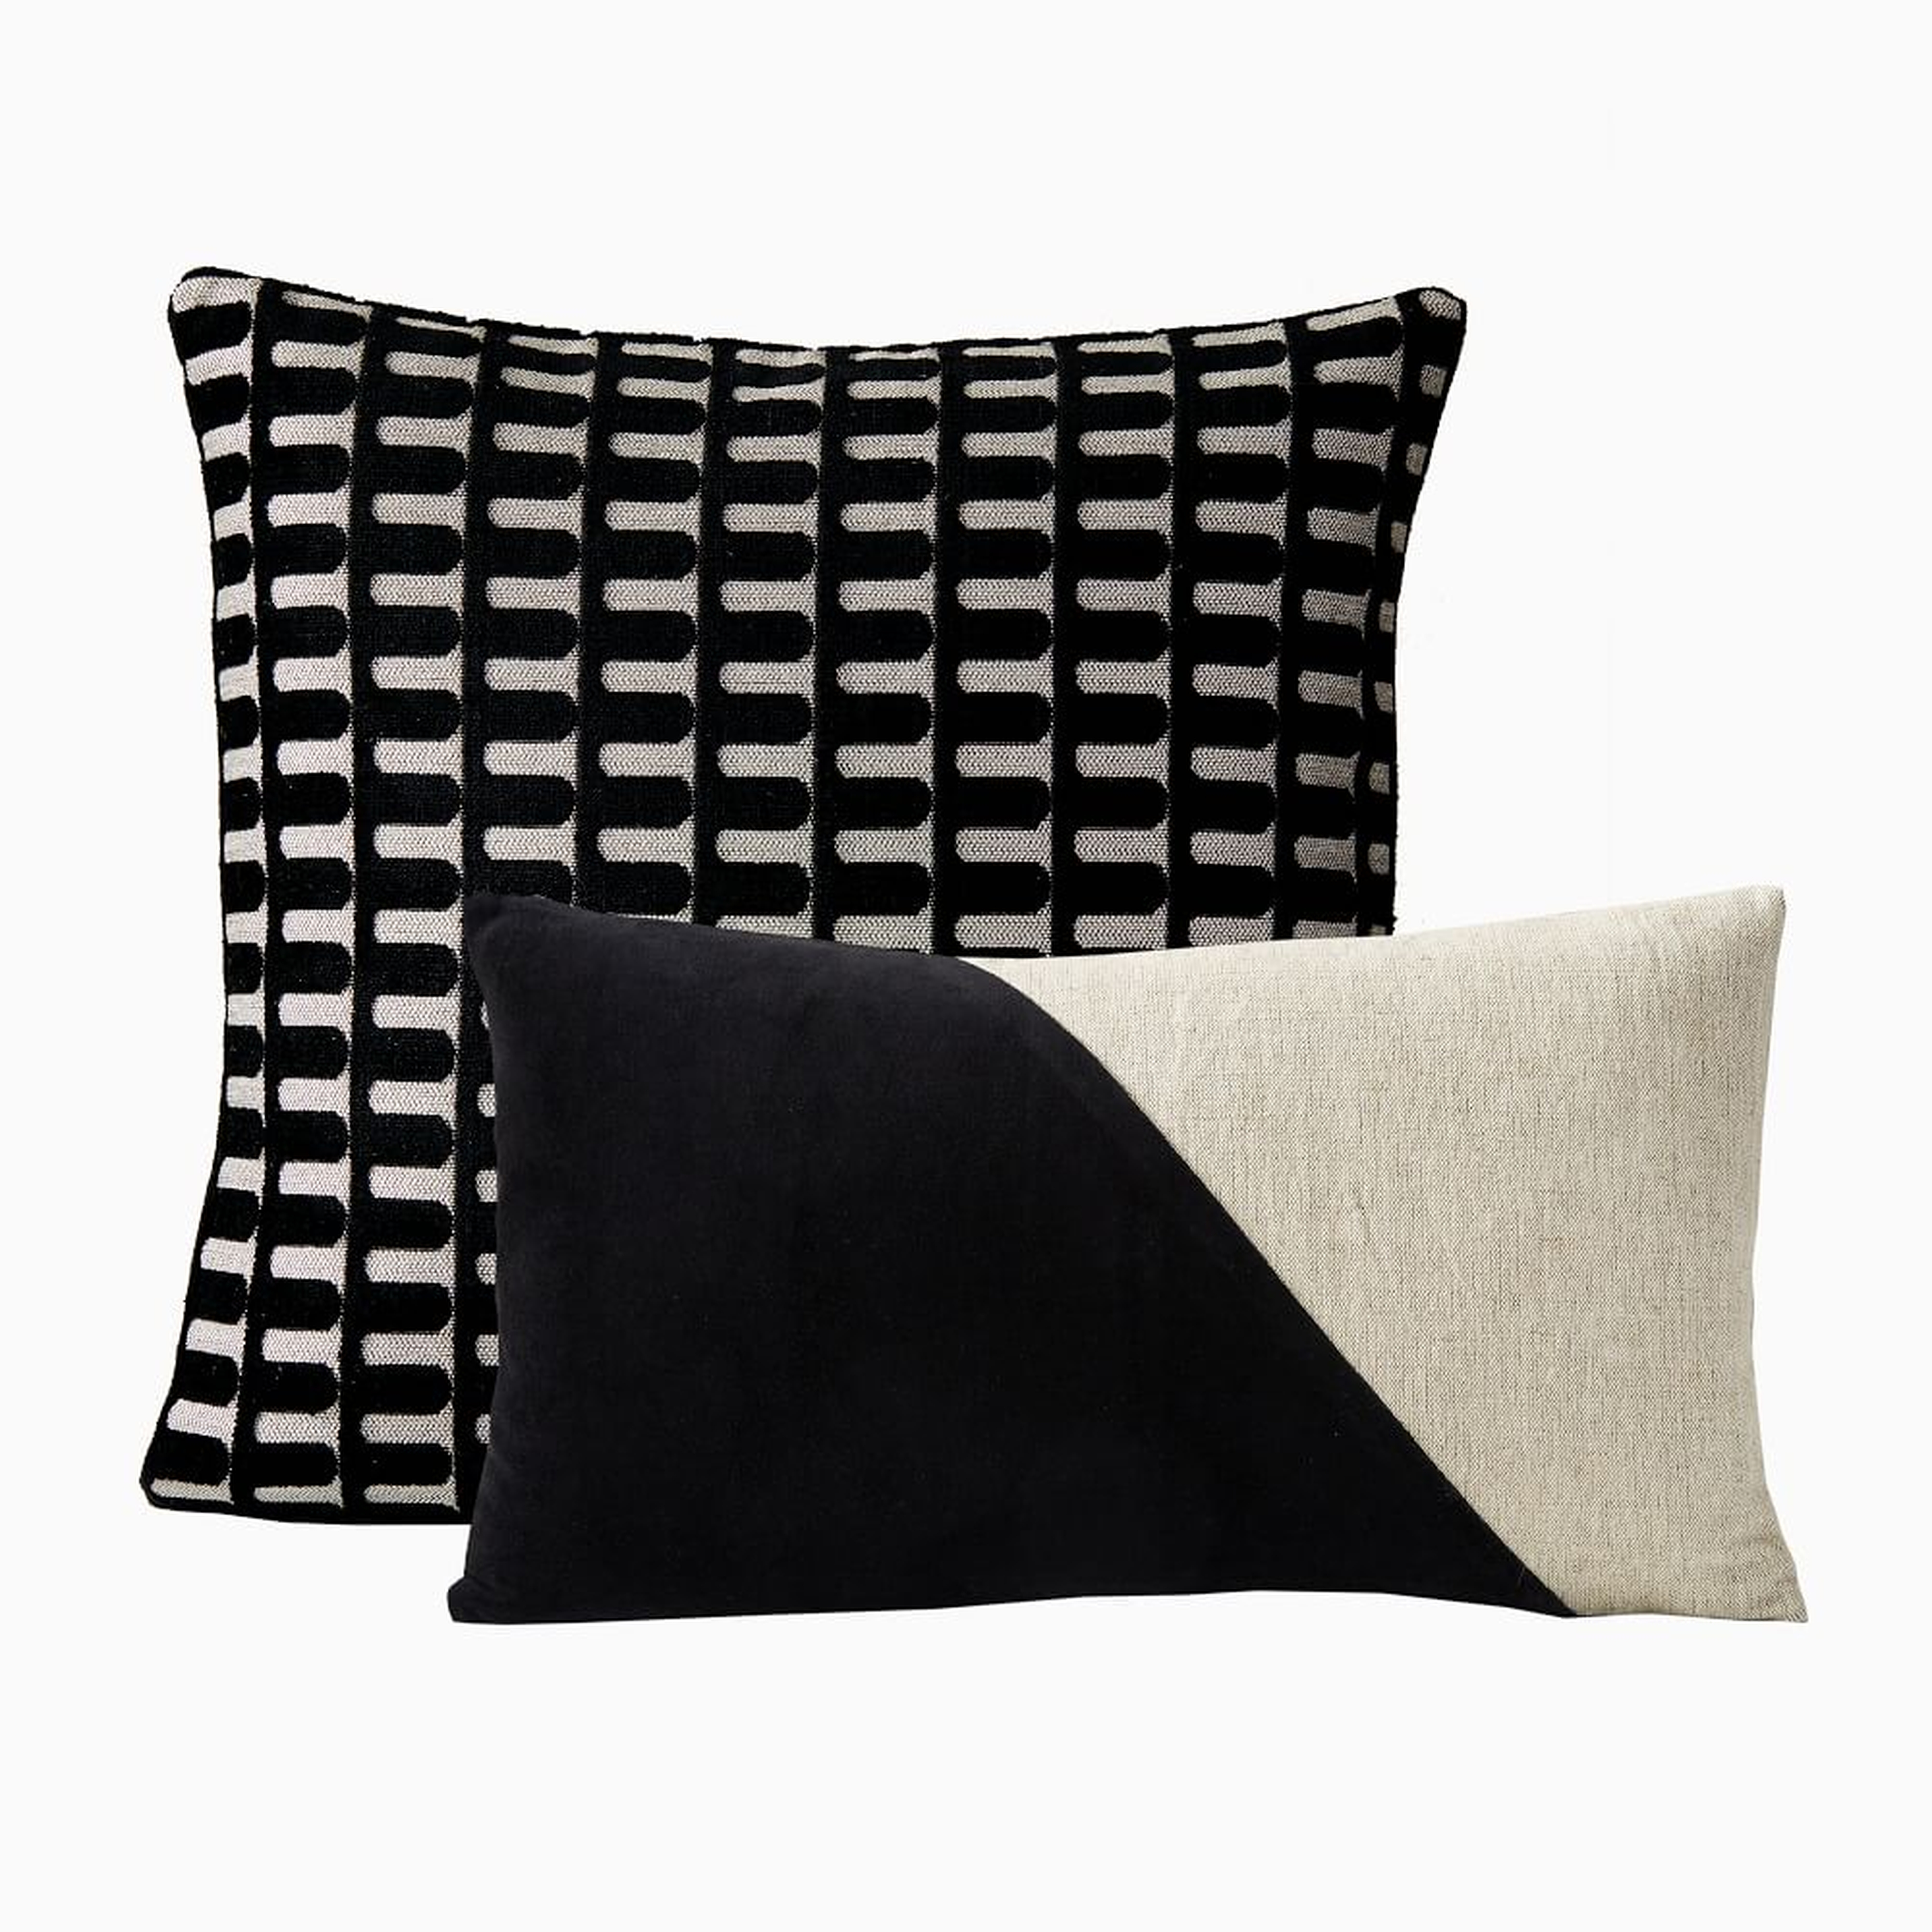 Cut Velvet Archways & Cotton Linen & Vevlet Corners Pillow Cover Set, Black, Set of 2 - West Elm